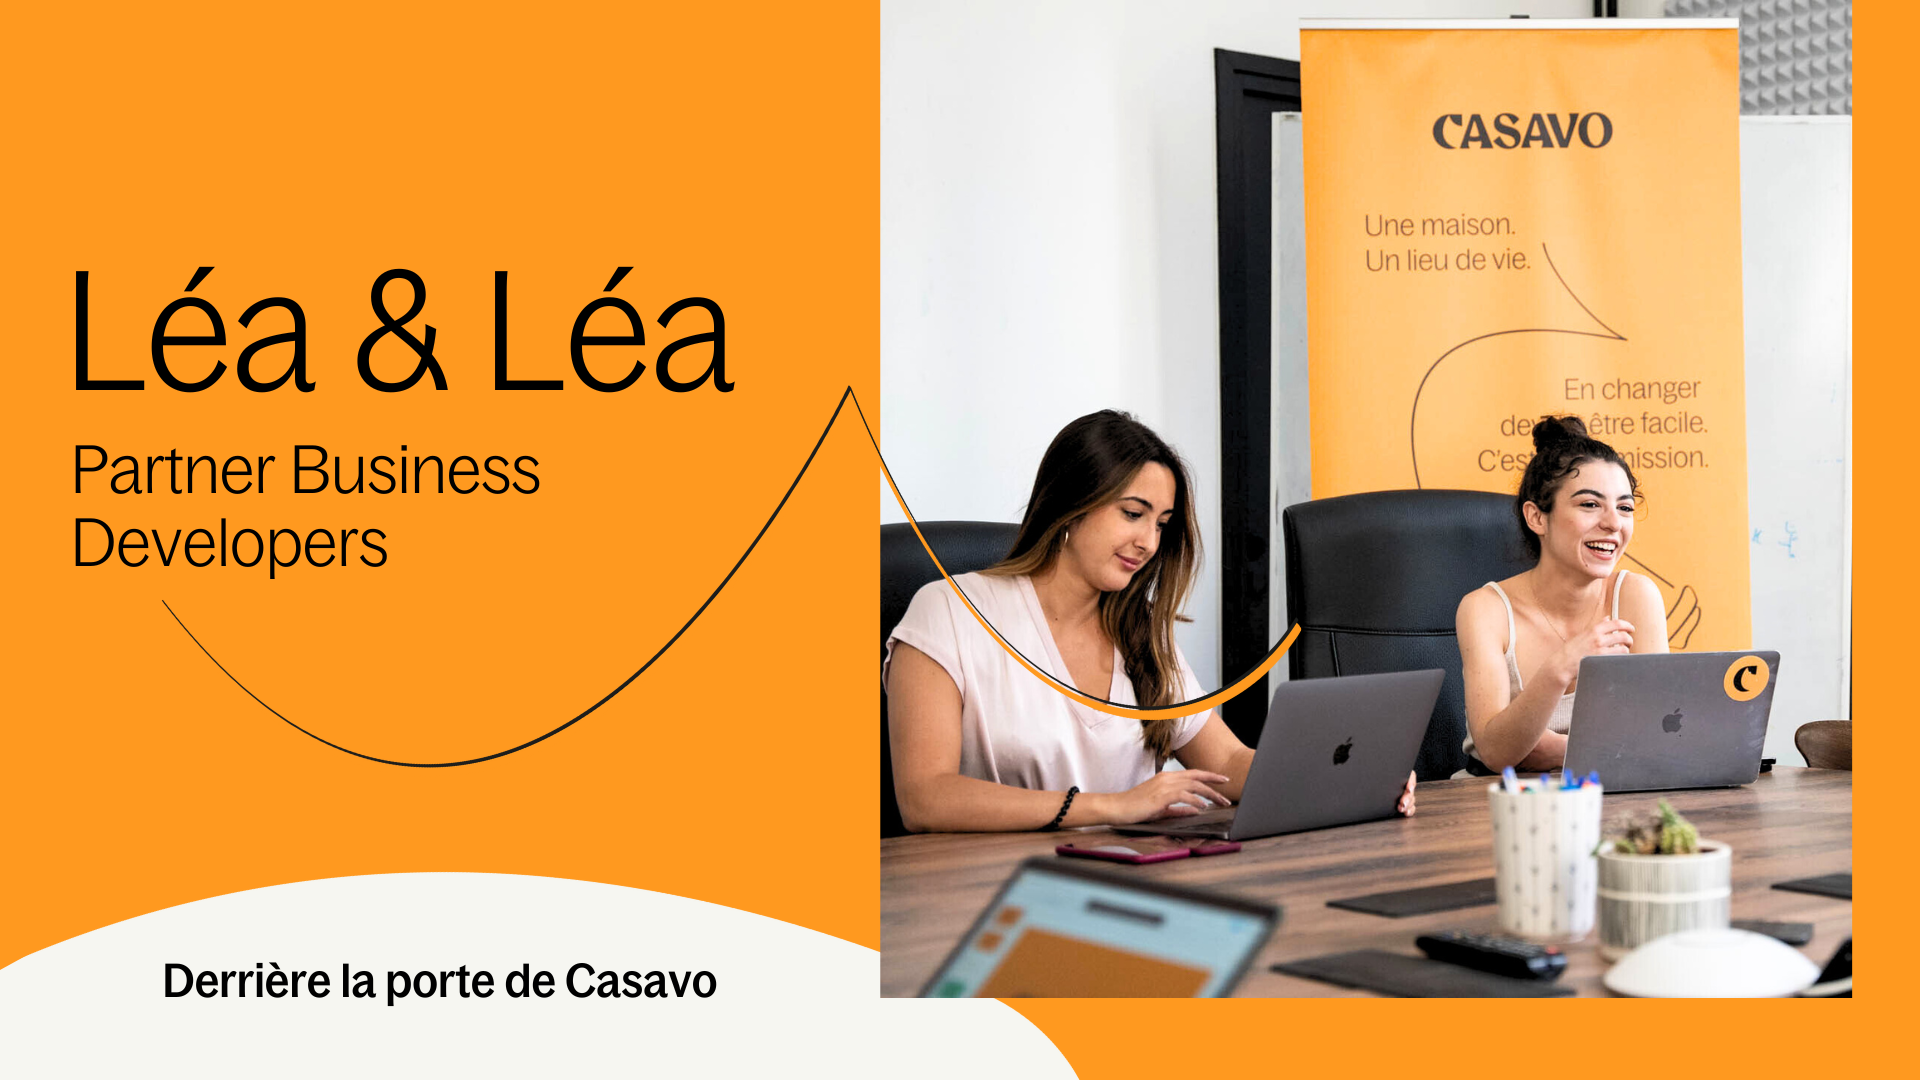 Derrière la porte de Casavo : Léa & Léa, Partner Business Developers